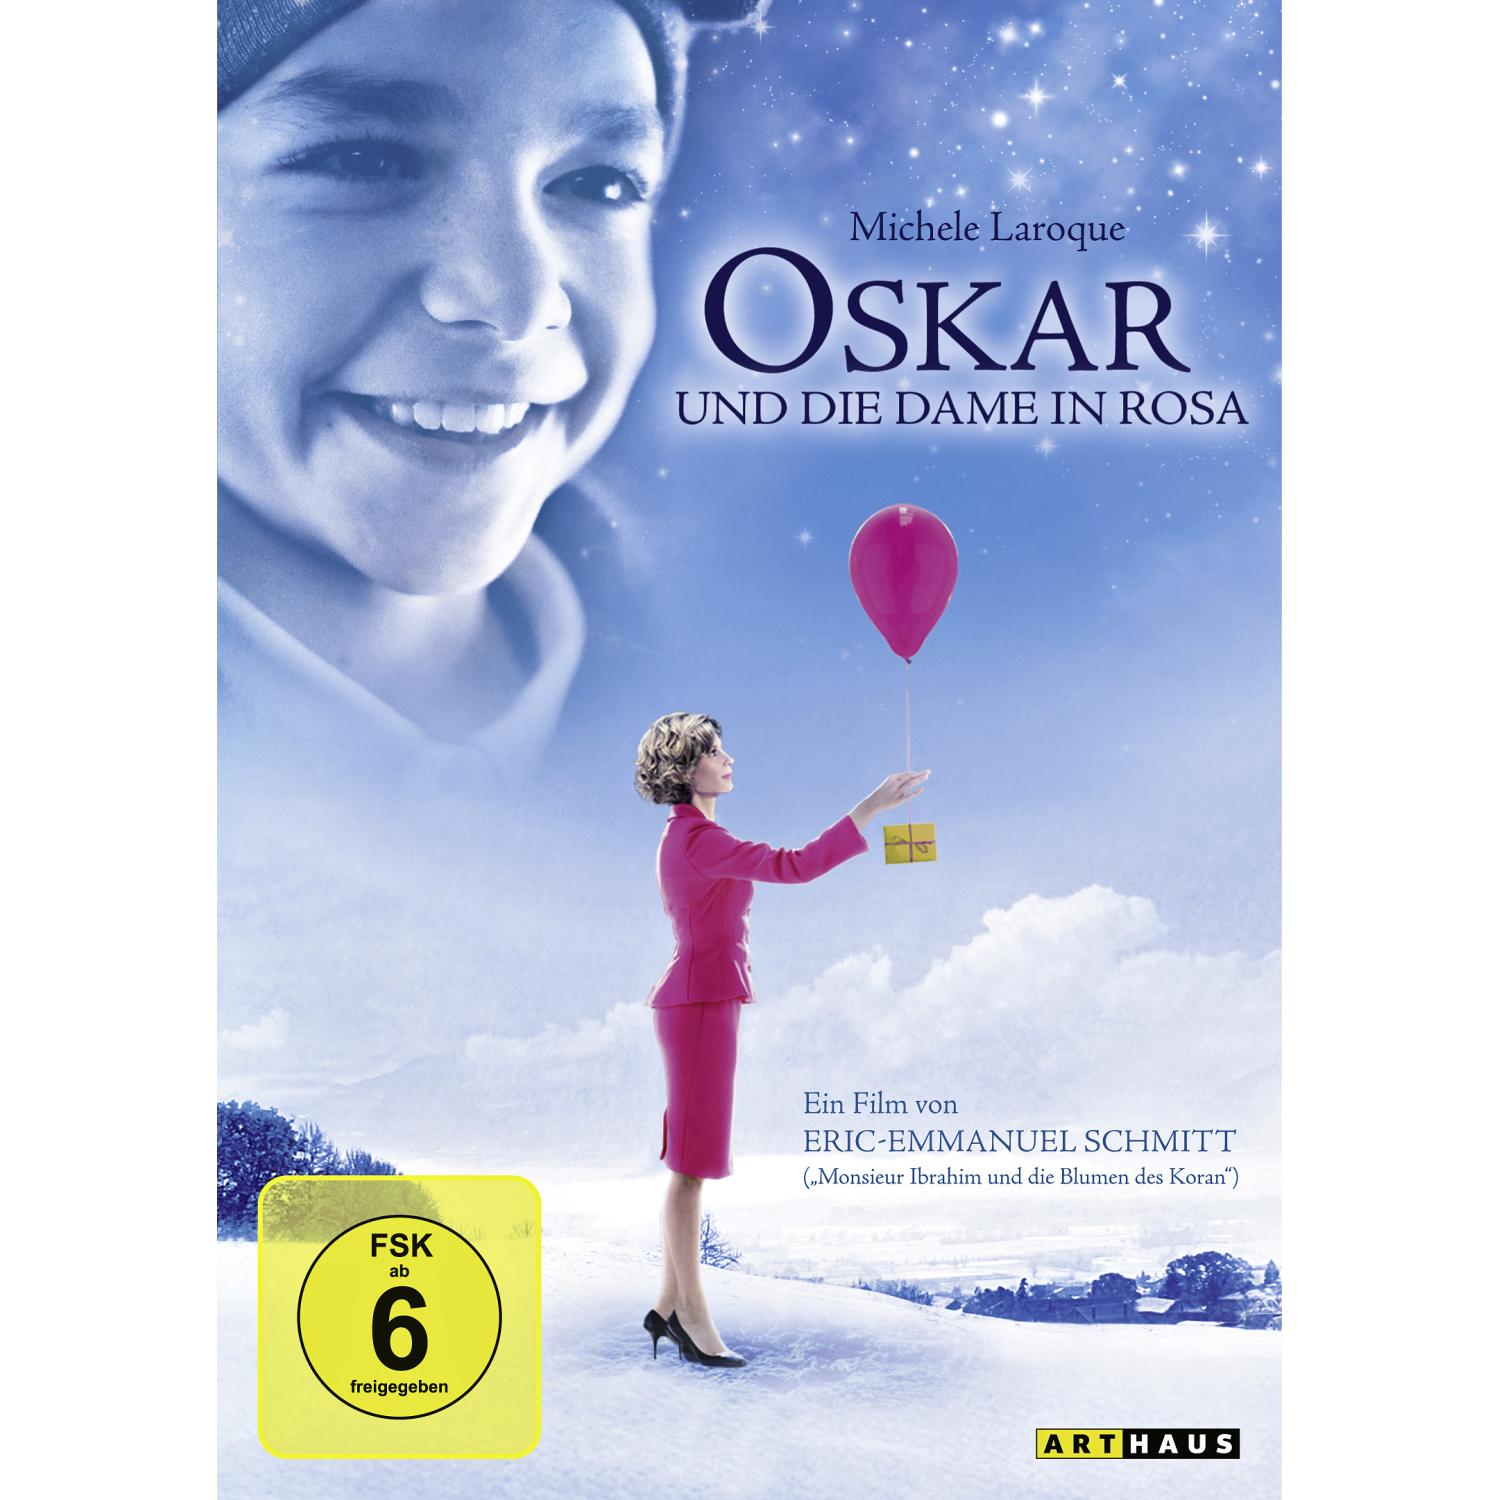 Dame Rosa Oskar die und in DVD